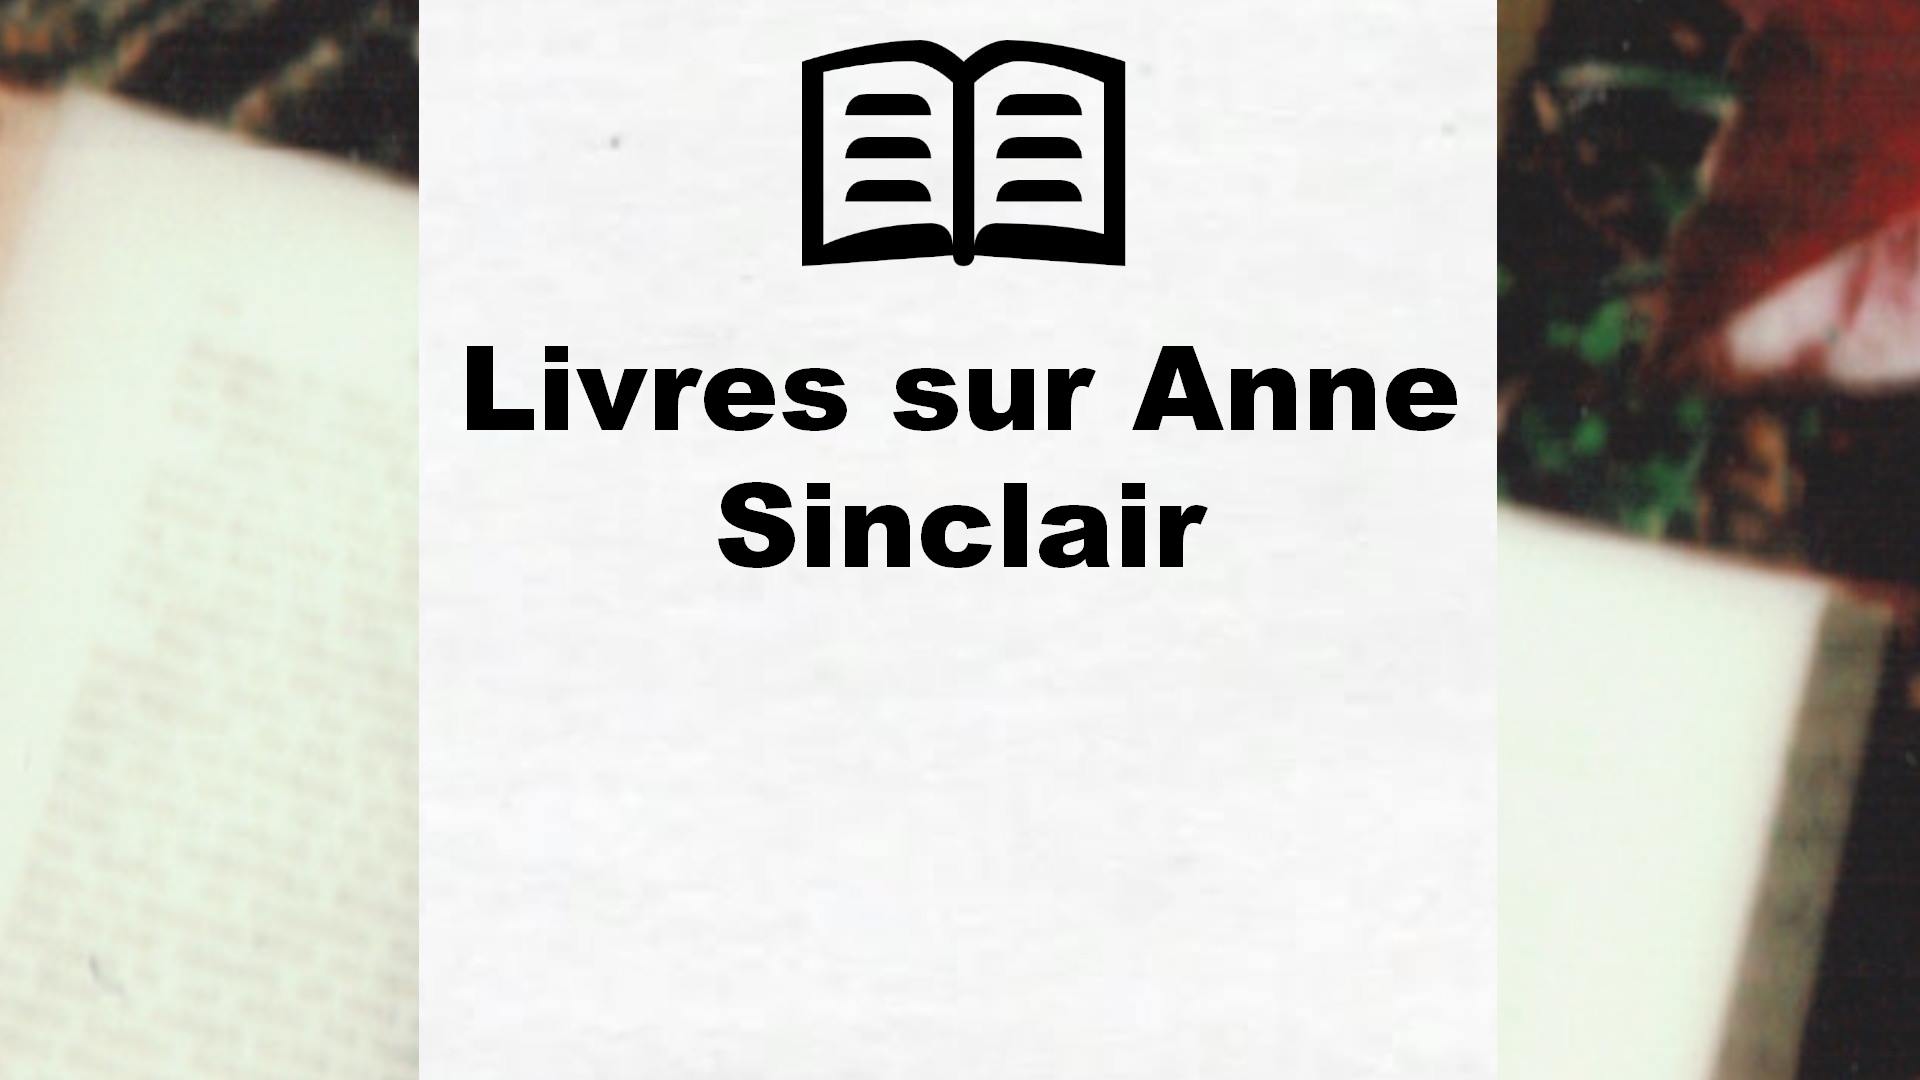 Livres sur Anne Sinclair